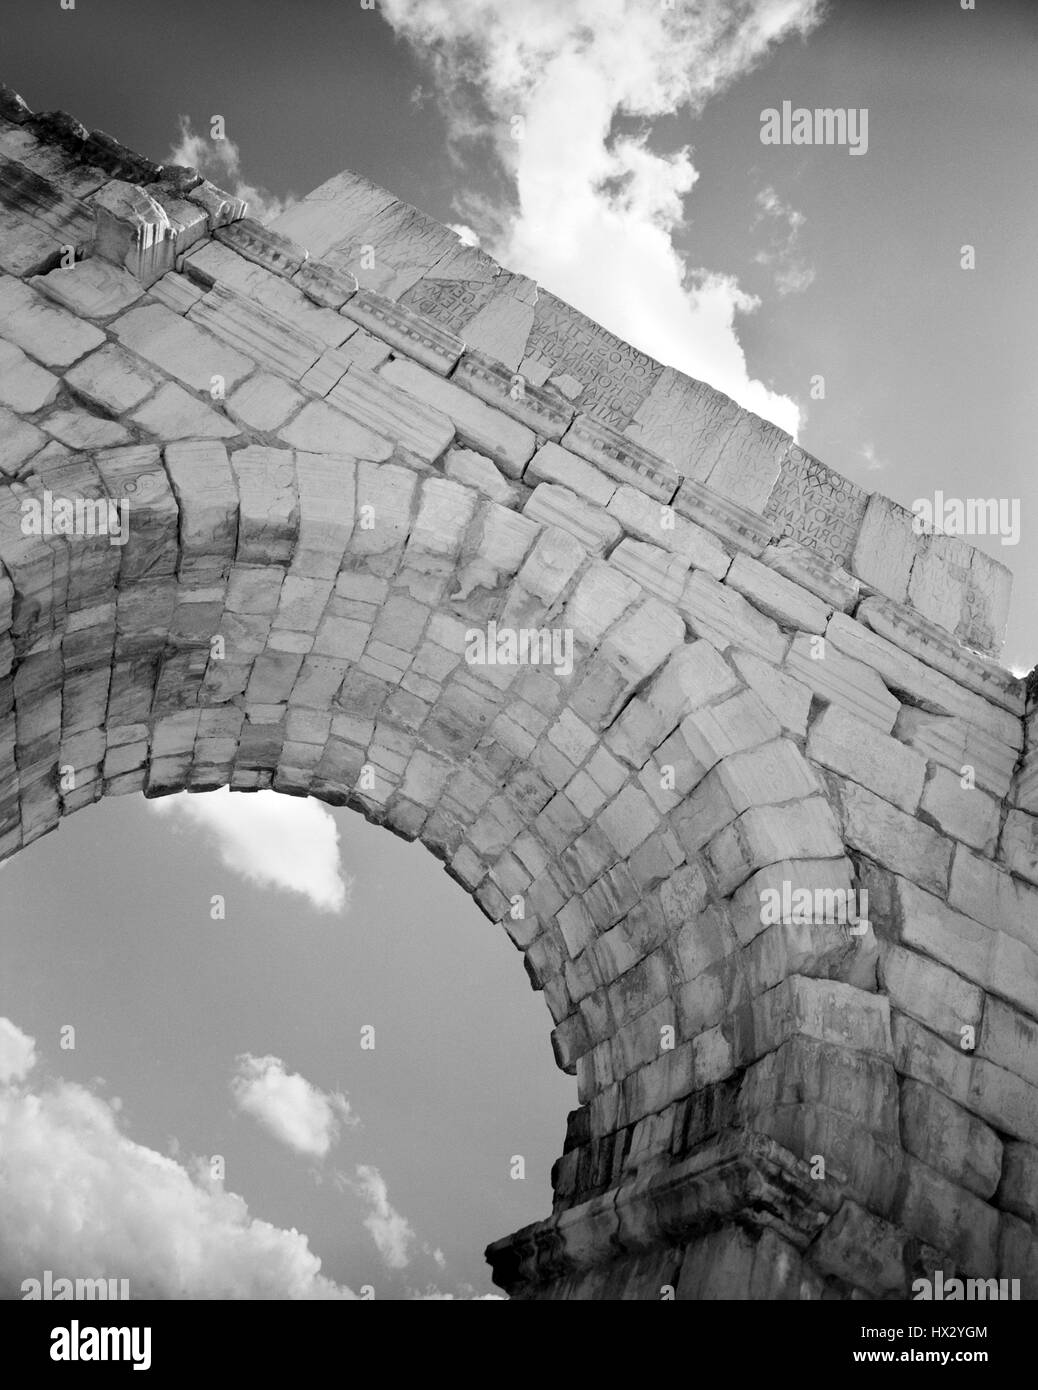 Aus Marmor Triumphbogen von Volubilis. Stein-Torbogen an der römischen Ruinen von Volubilis. Volubilis, war eine römische Siedlung errichtet auf, was wohl ein C Stockfoto